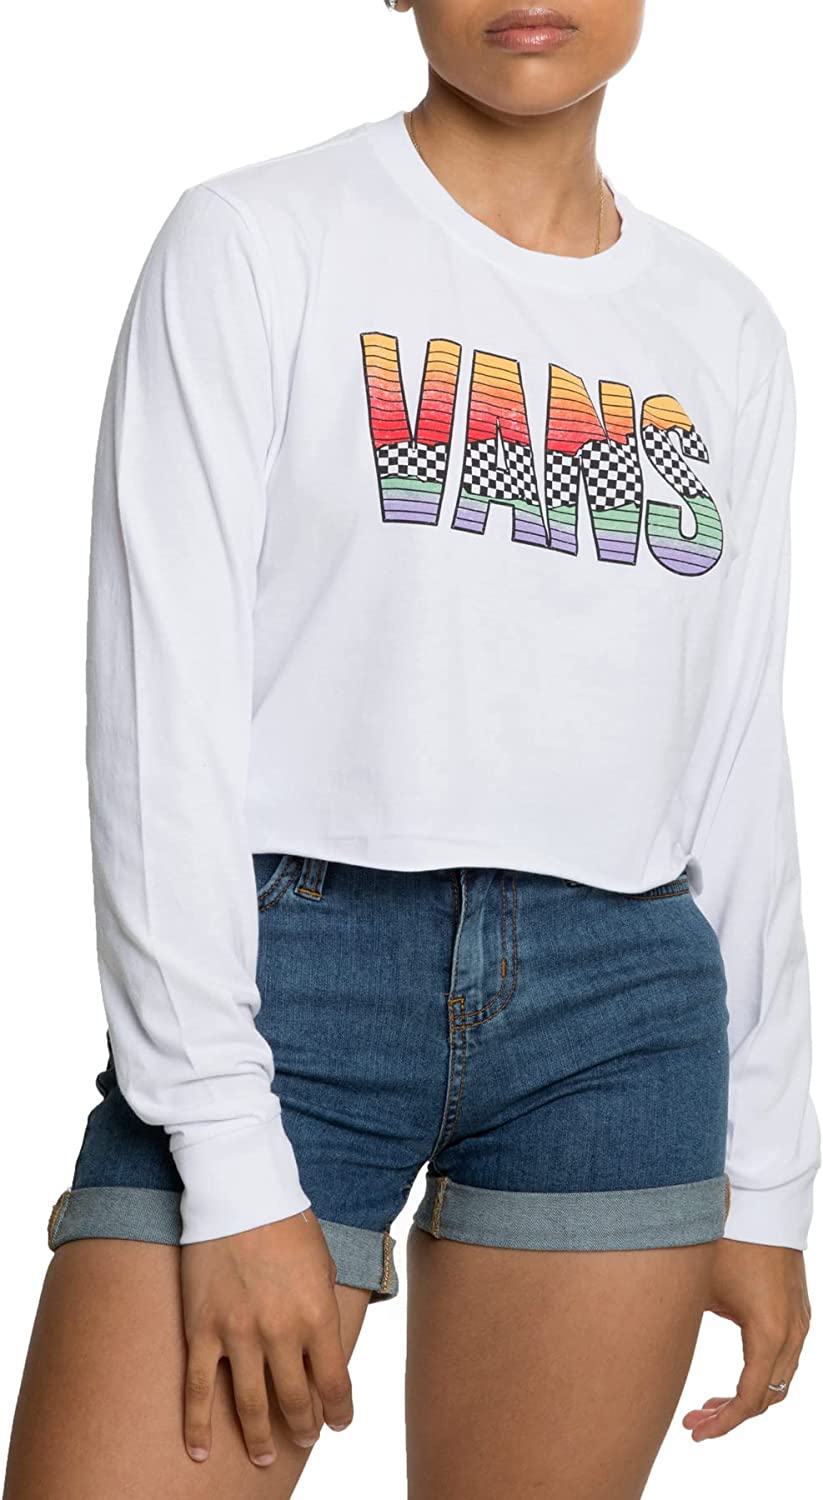 Vans Women's Tore Up Long Sleeve Crop Top T-Shirt, White, S